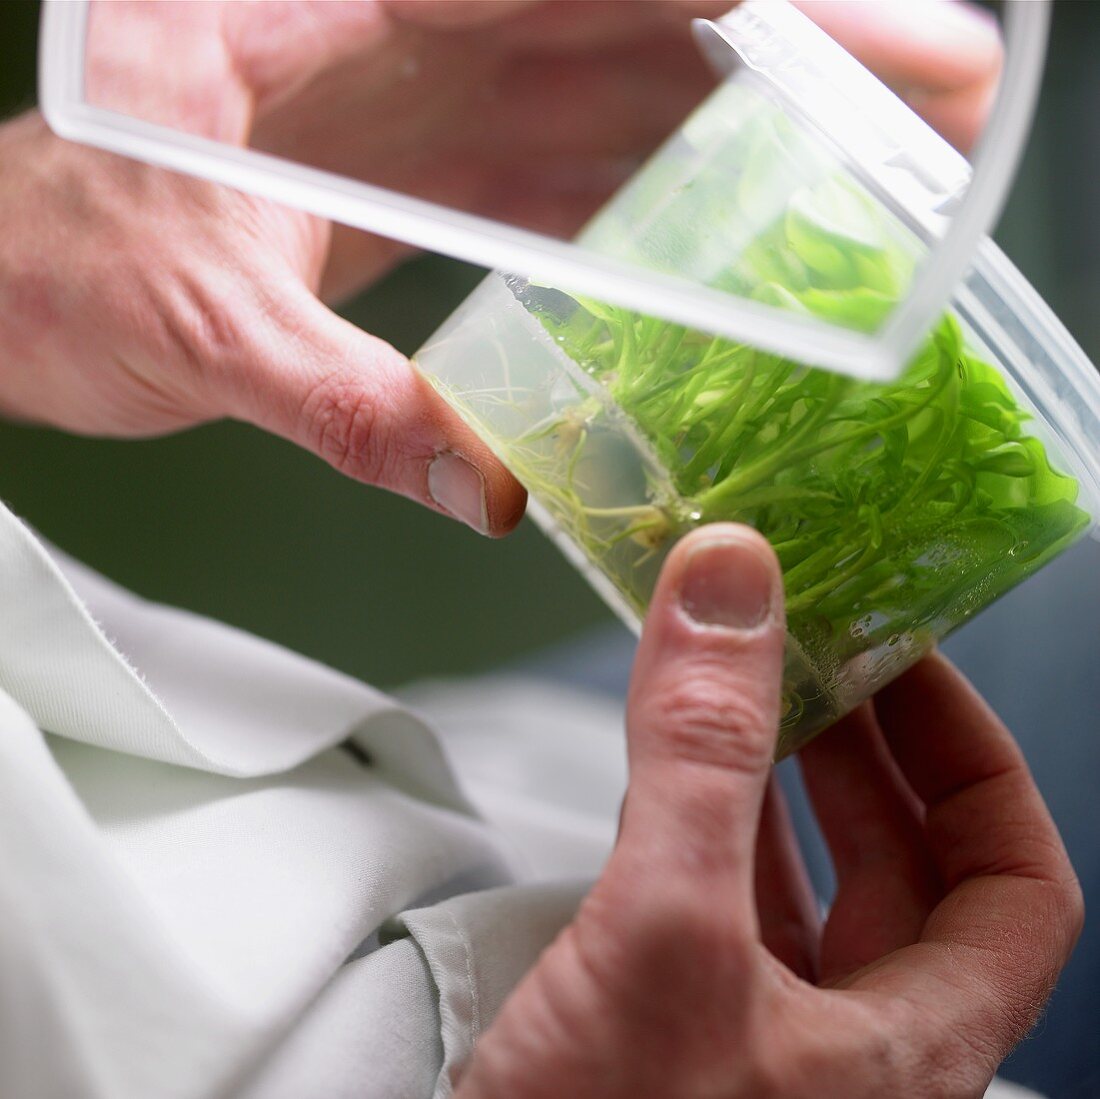 Pflanzen werden in einem Labor untersucht